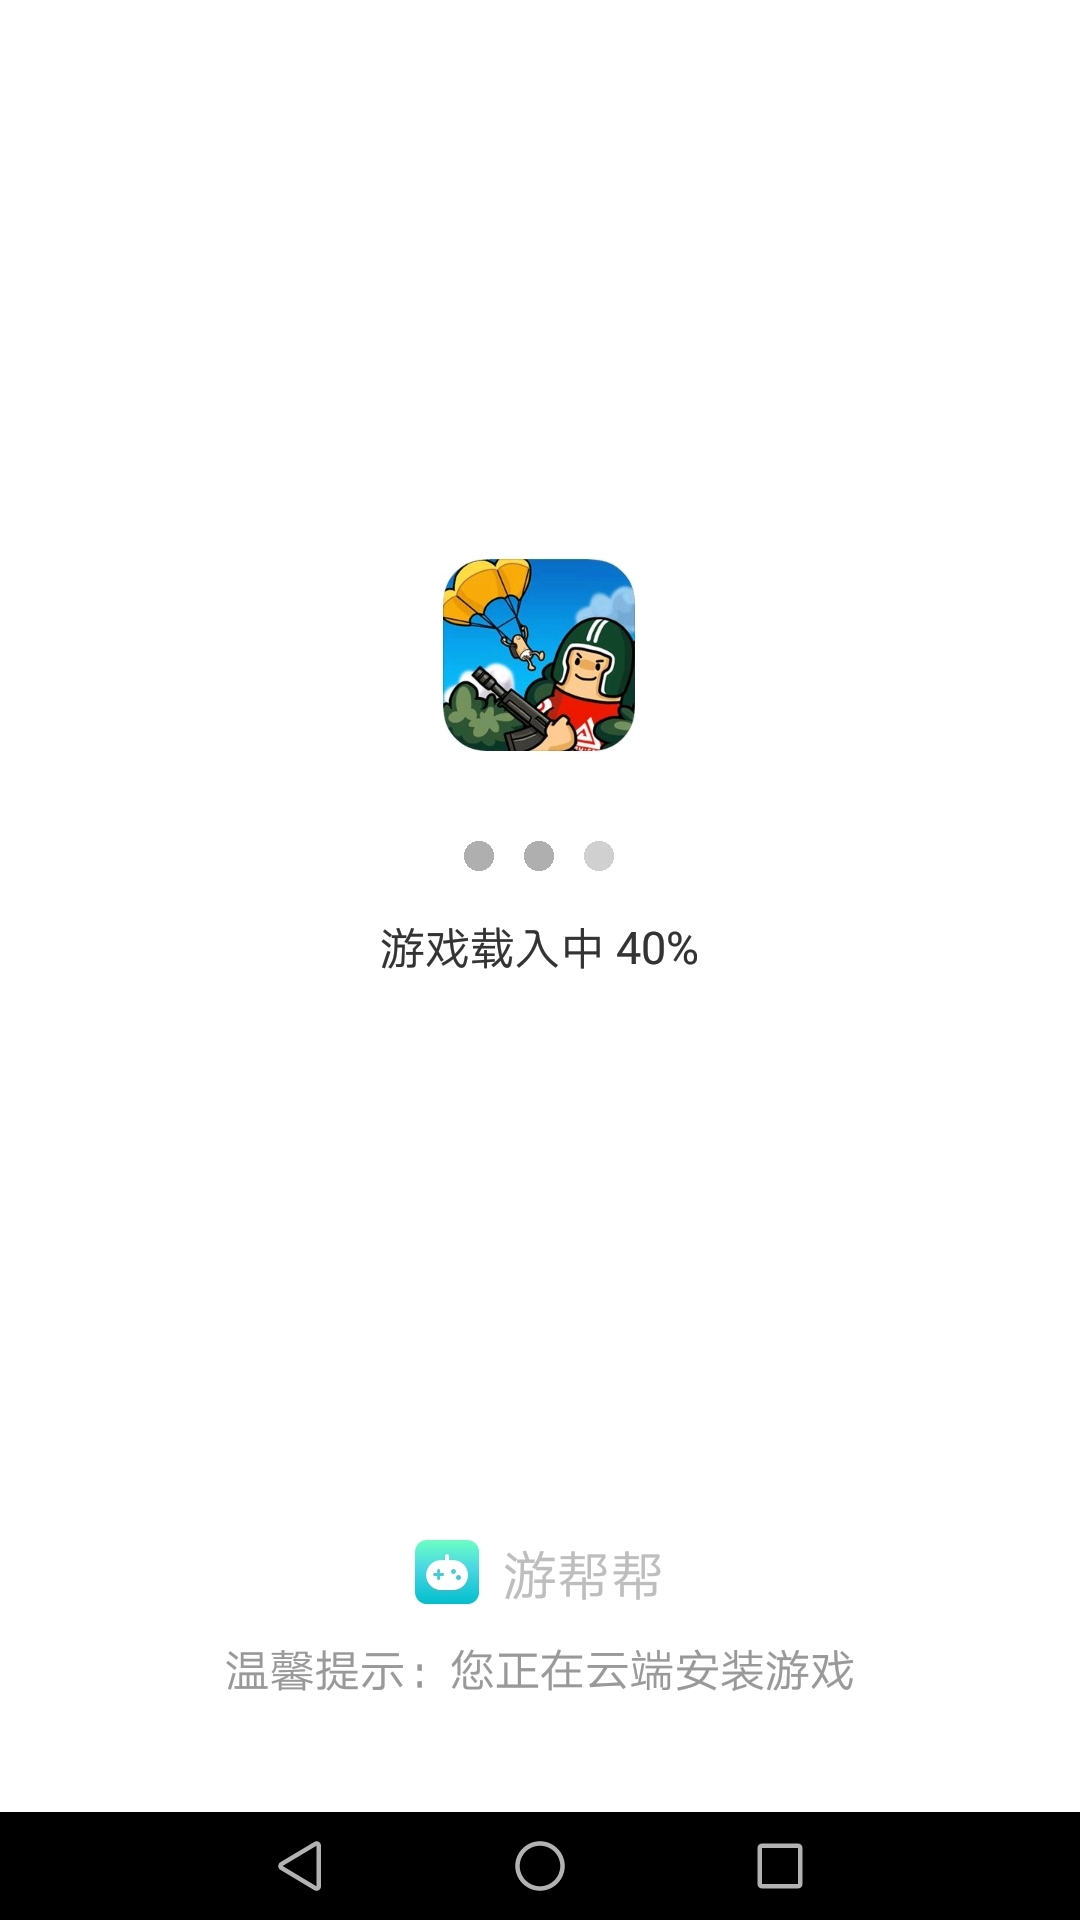 游帮帮云游戏济南app商城网站开发